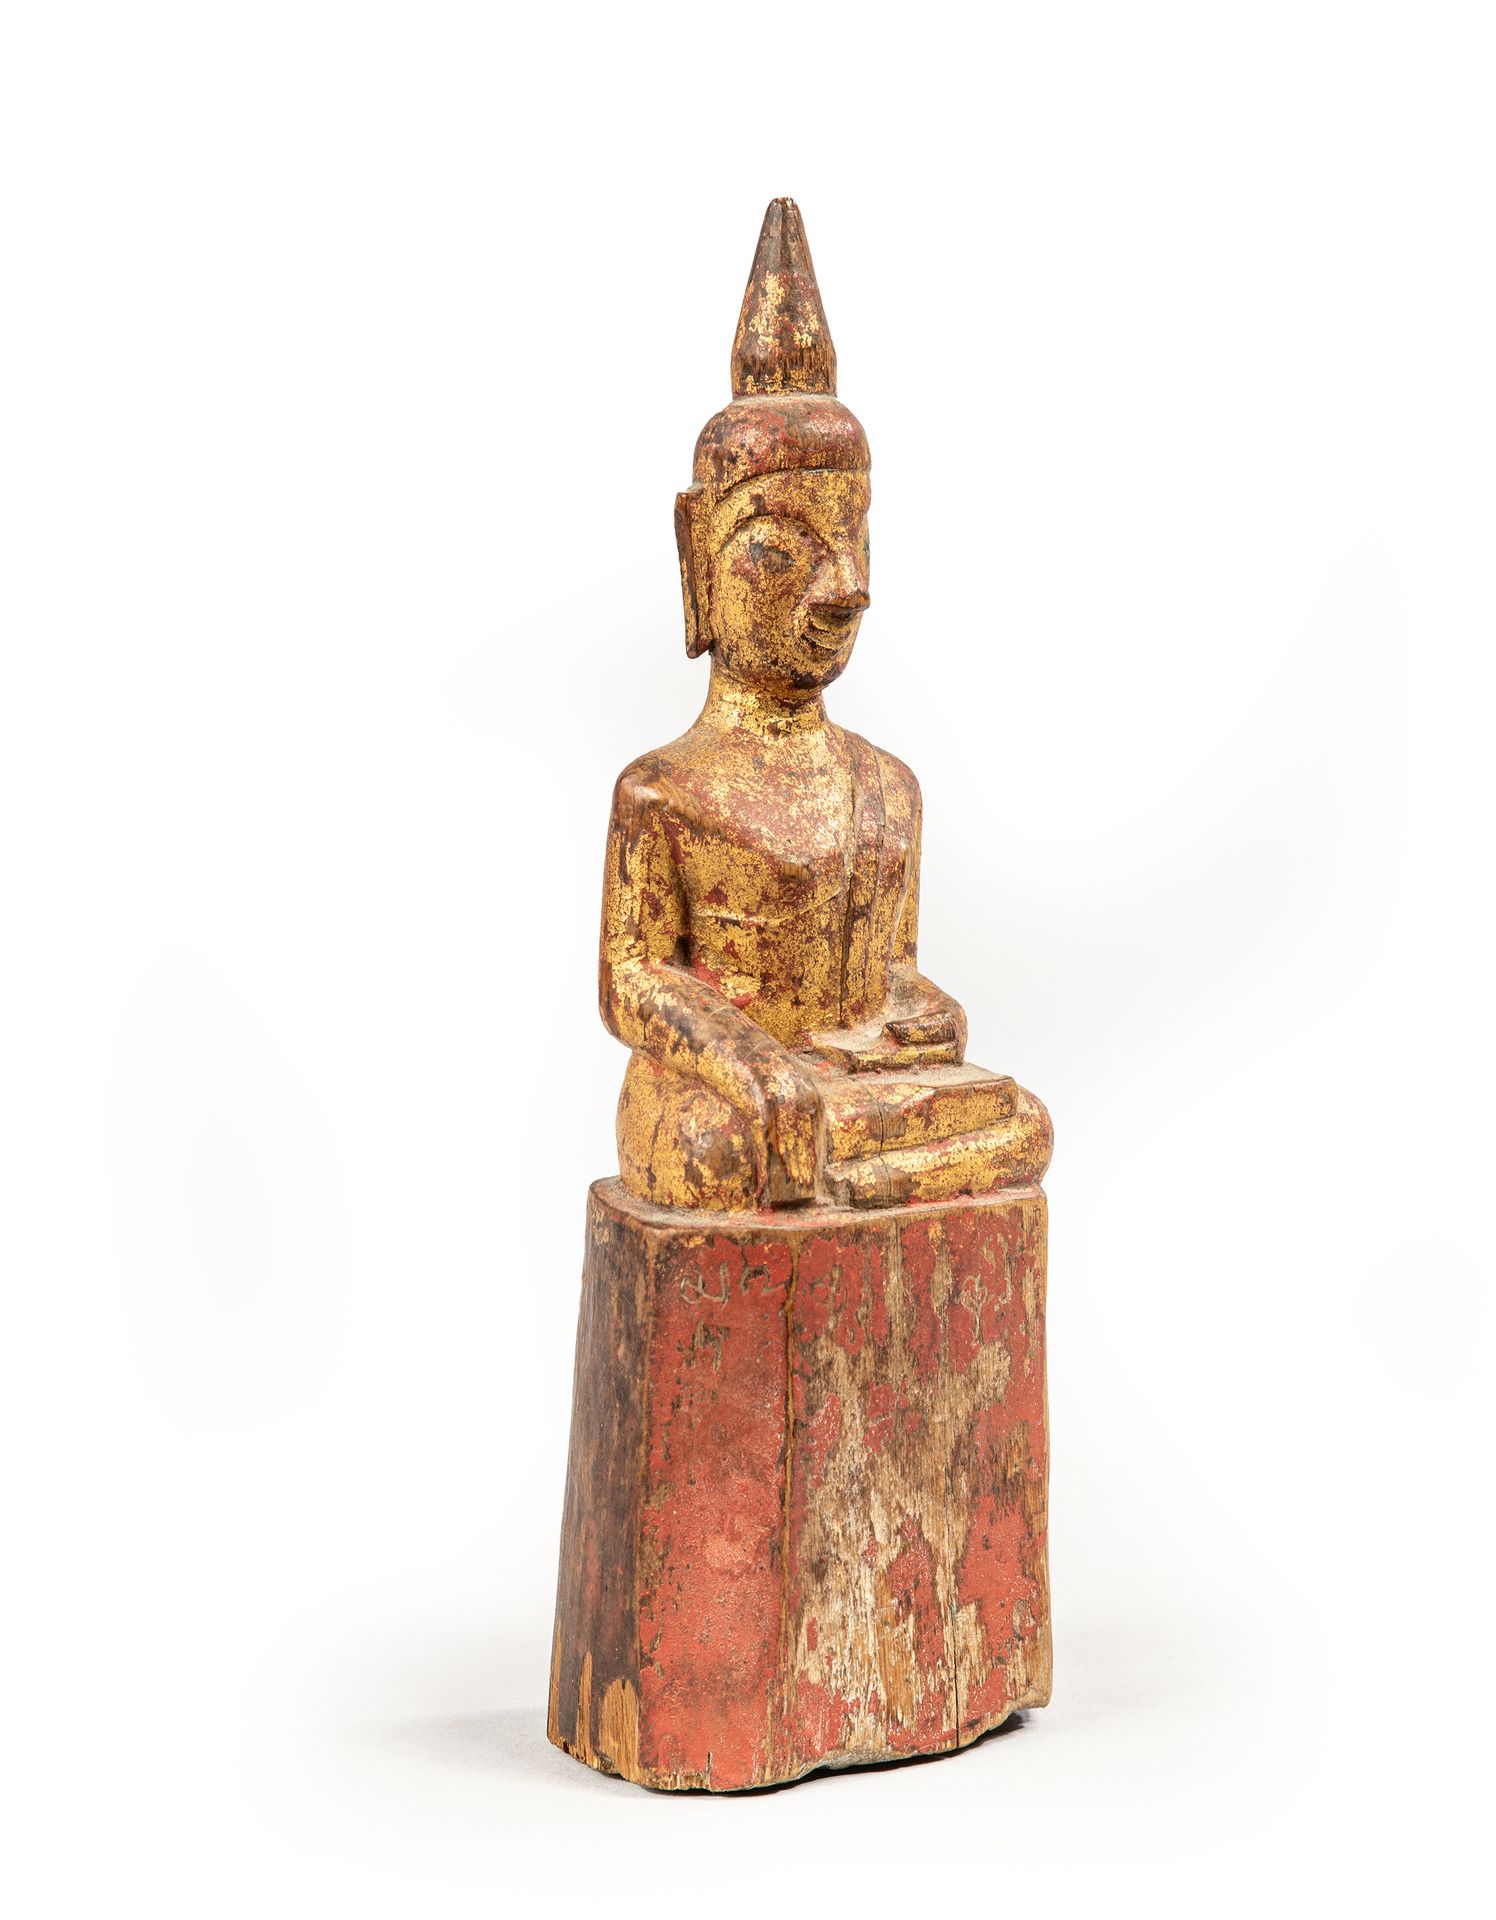 Null 
Buddha in legno laccato.

Birmania 19° secolo

H. 18,5 cm